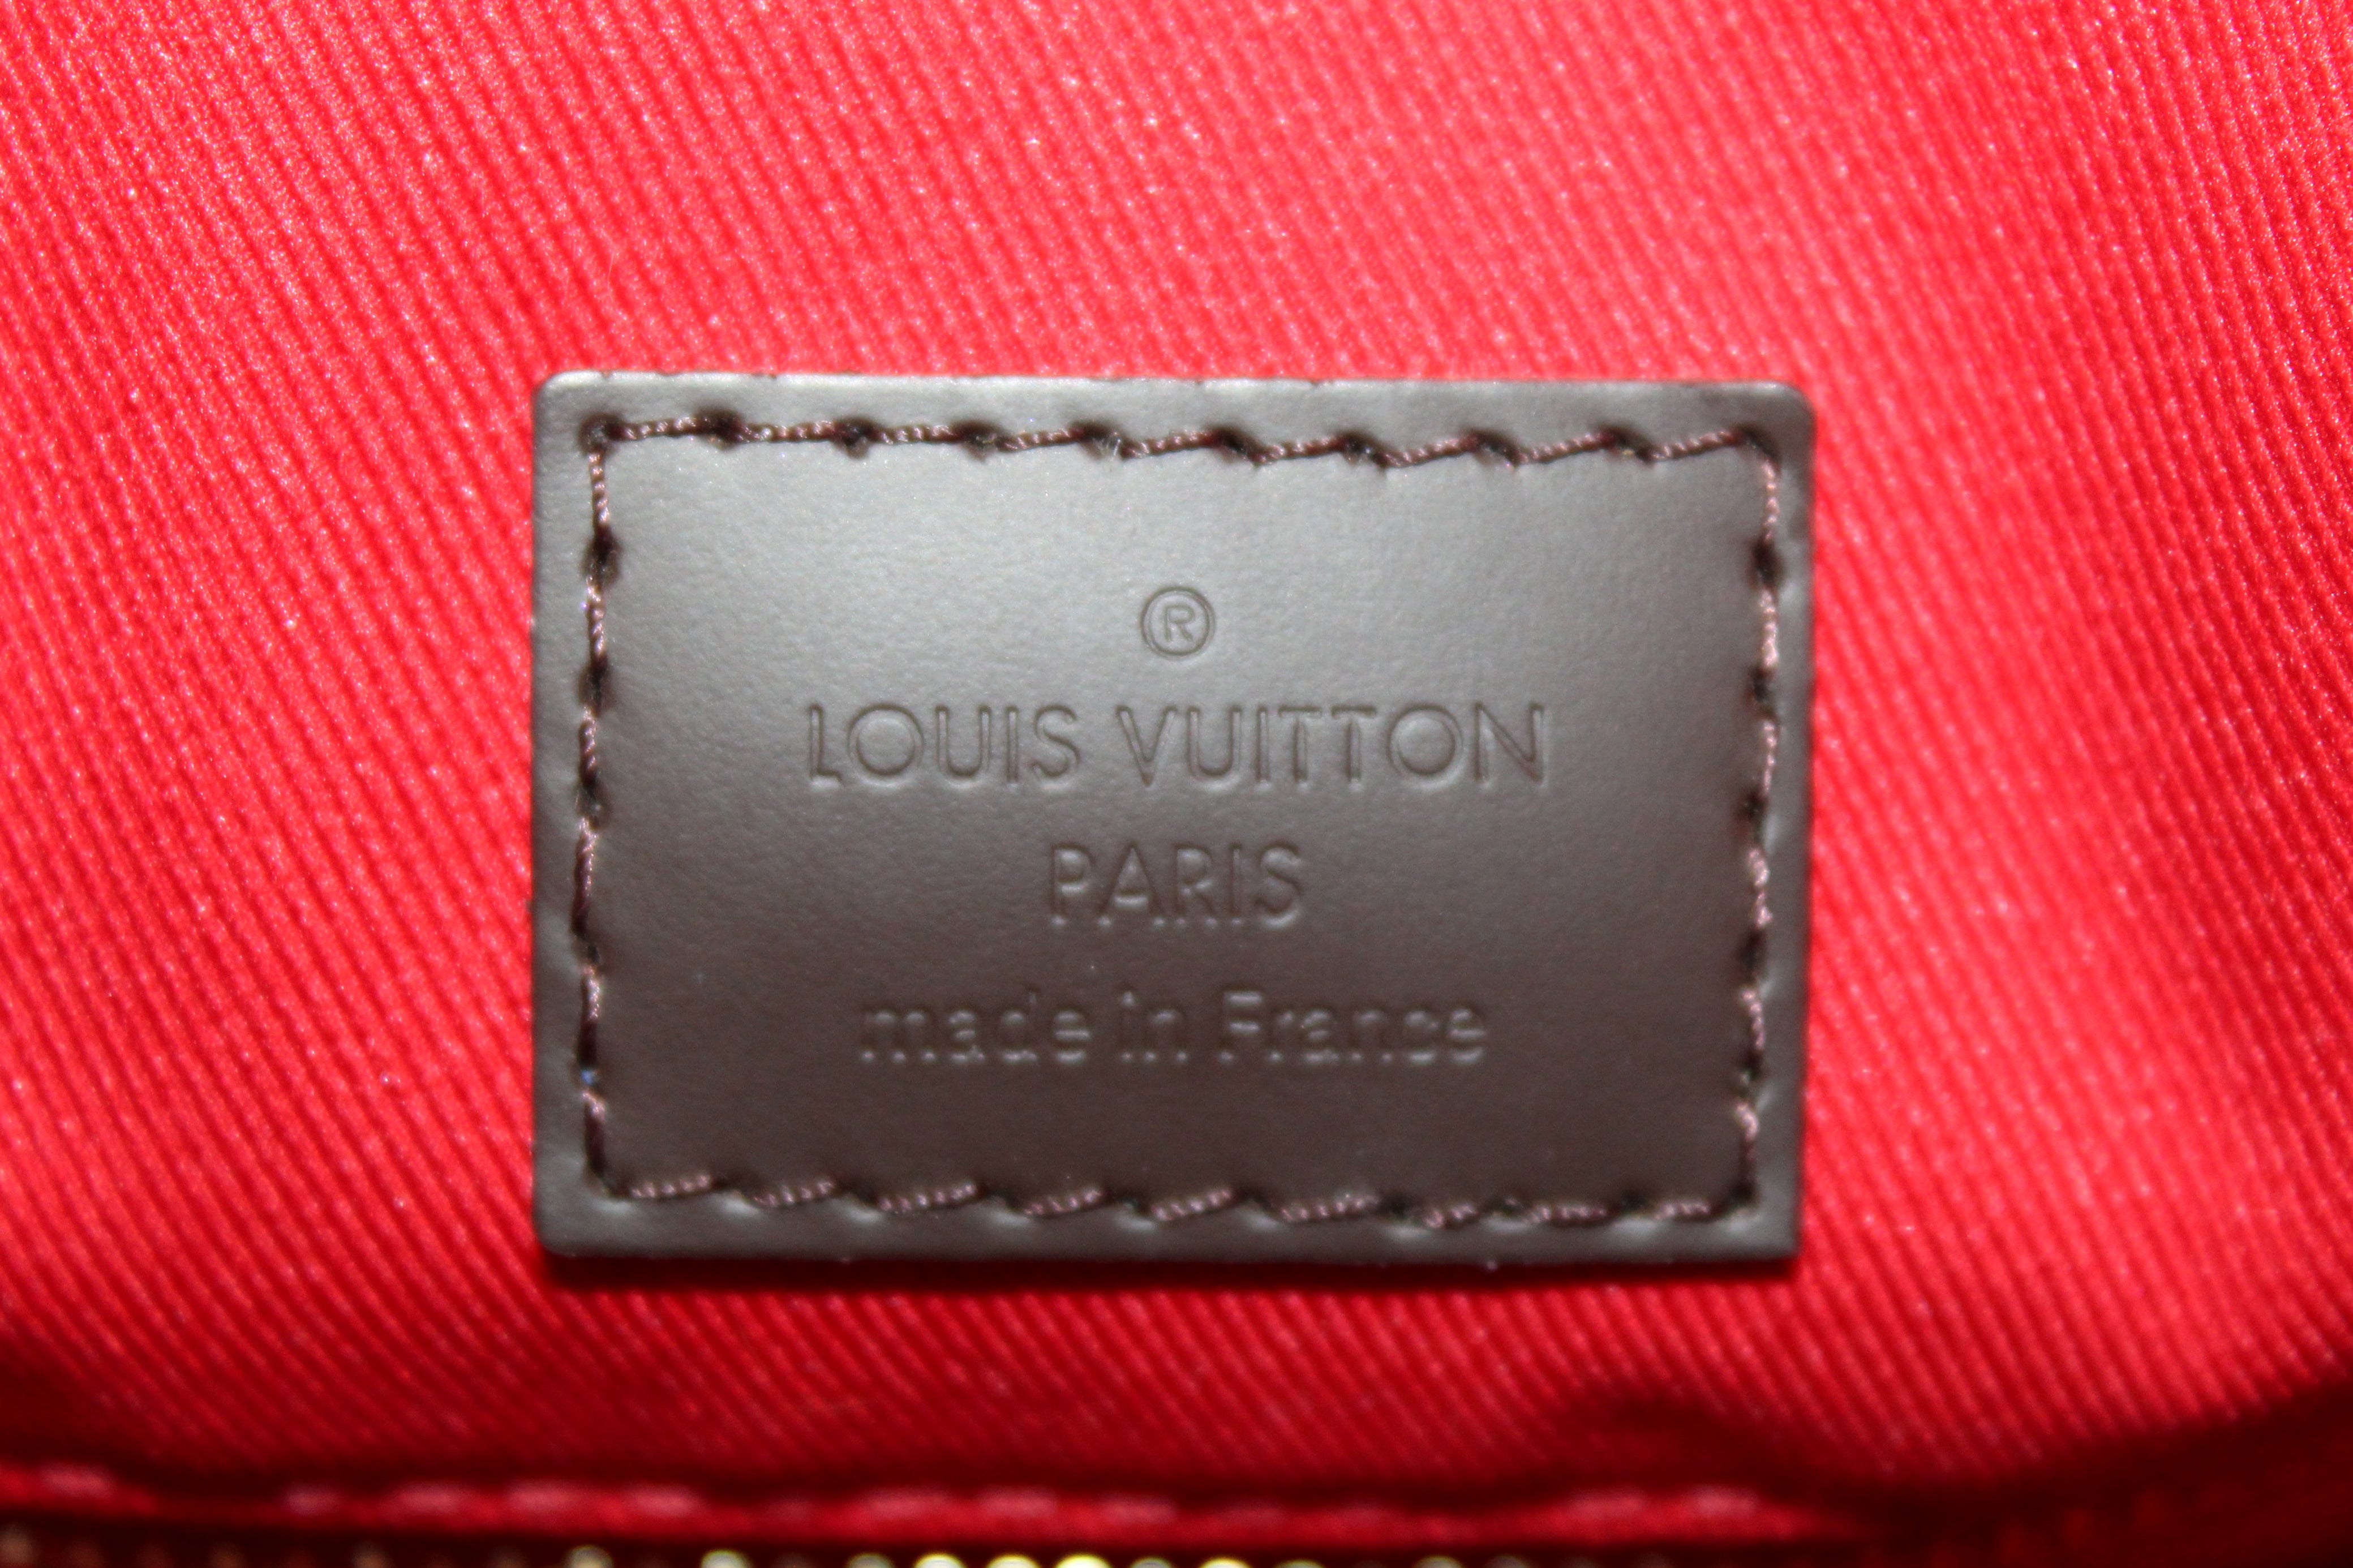 Authentic Louis Vuitton Damier Ebene Canvas Graceful PM Tote Shoulder Bag